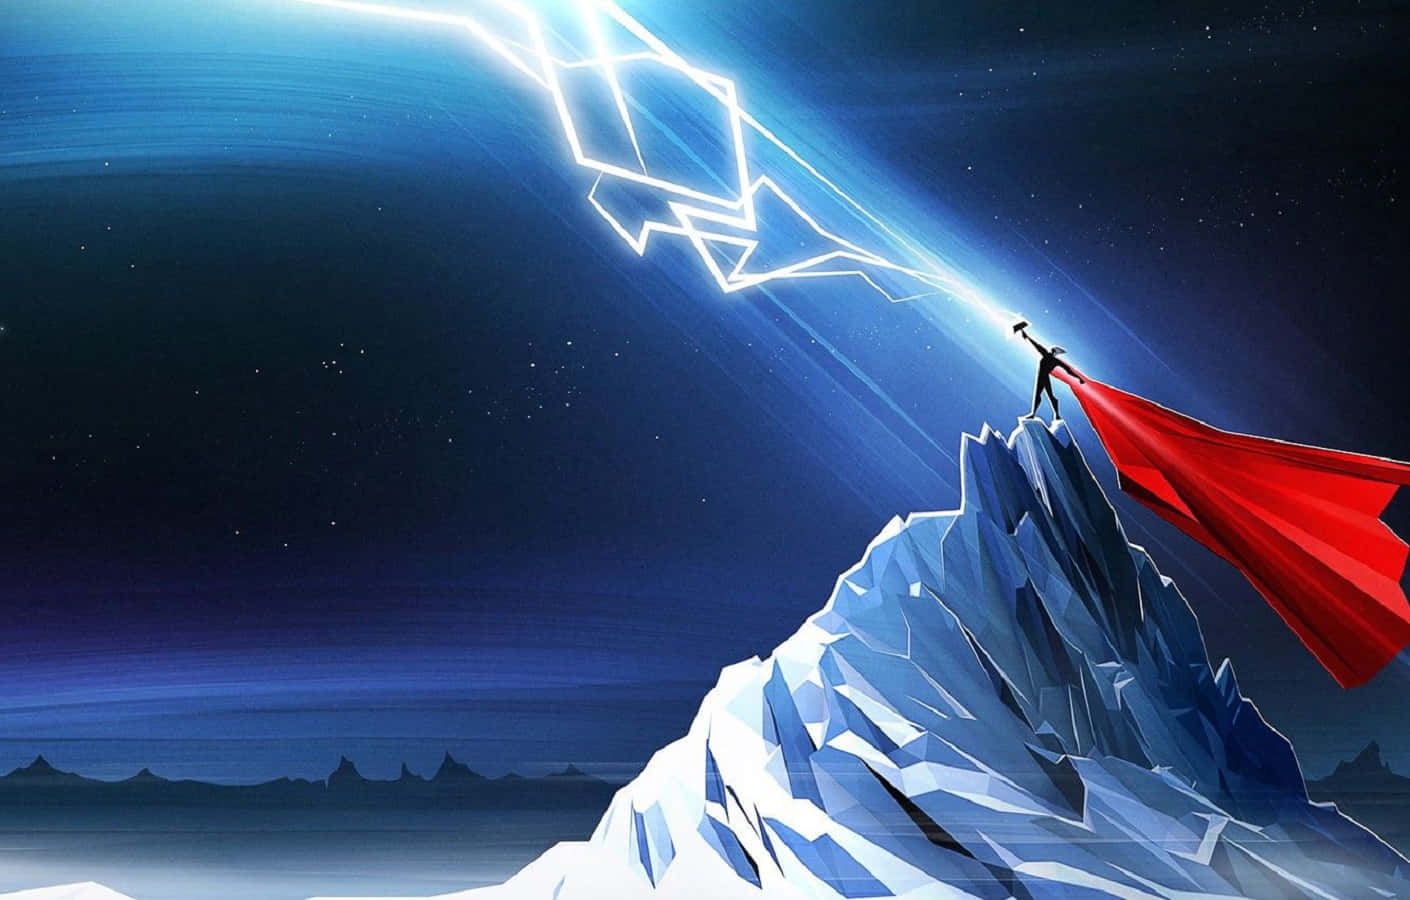 Feel the power of Thor, the God of Thunder! Wallpaper